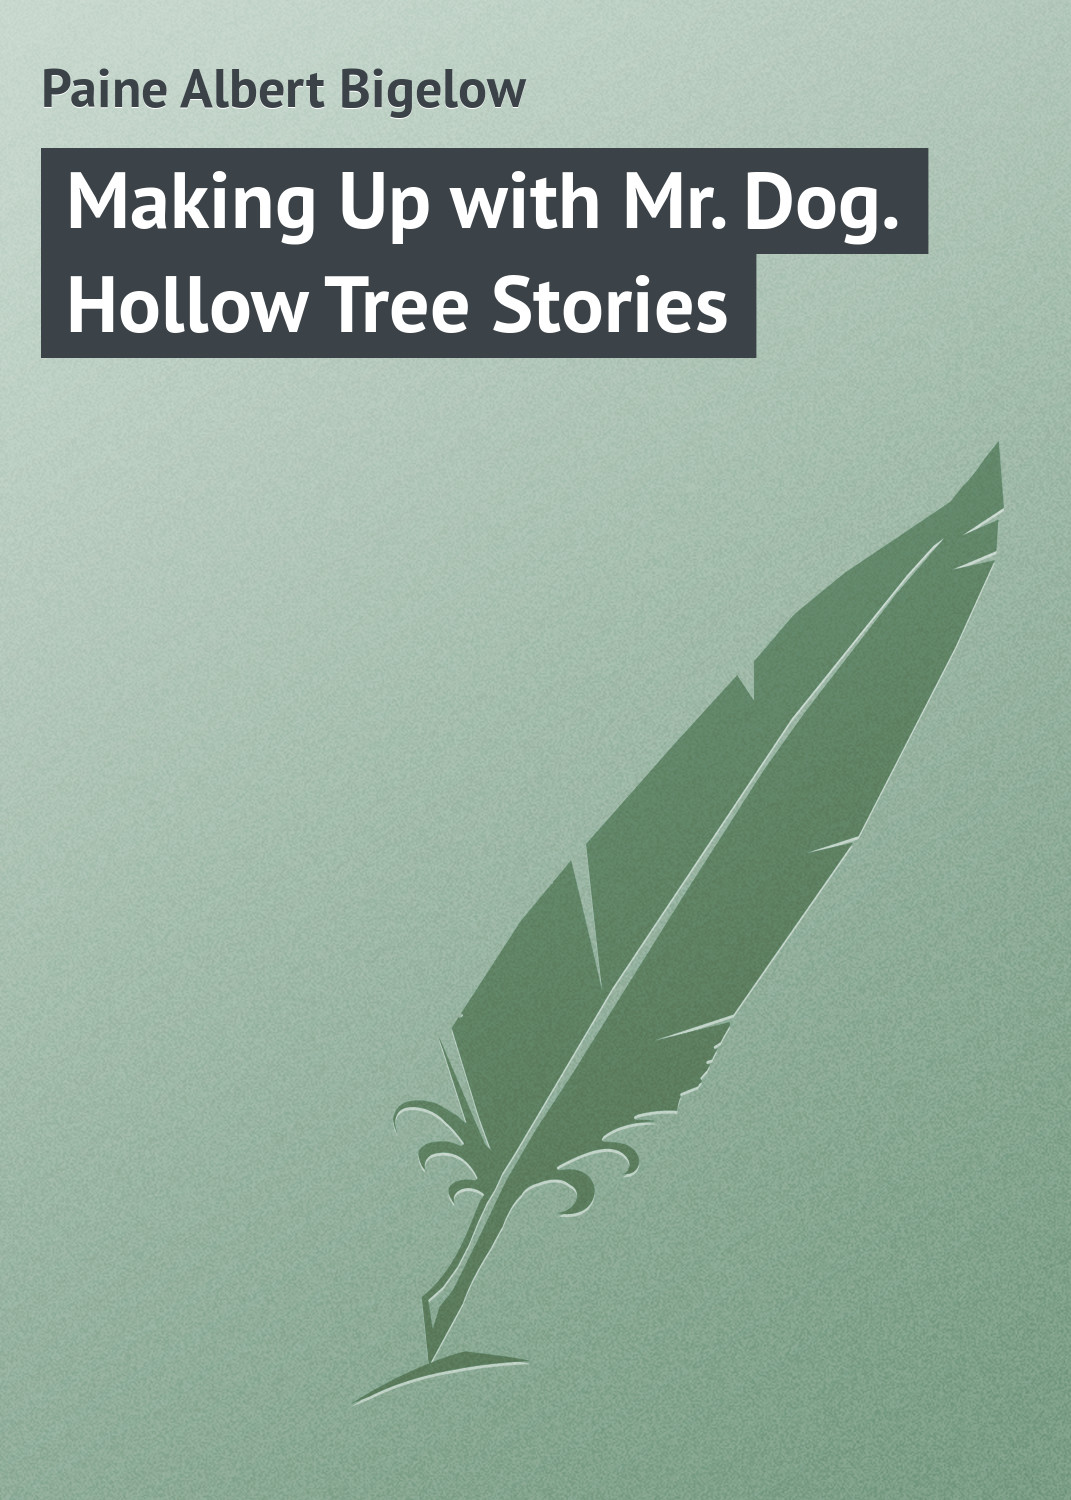 Книга Making Up with Mr. Dog. Hollow Tree Stories из серии , созданная Albert Paine, может относится к жанру Зарубежные детские книги, Природа и животные, Зарубежная классика, Иностранные языки. Стоимость электронной книги Making Up with Mr. Dog. Hollow Tree Stories с идентификатором 23146203 составляет 5.99 руб.